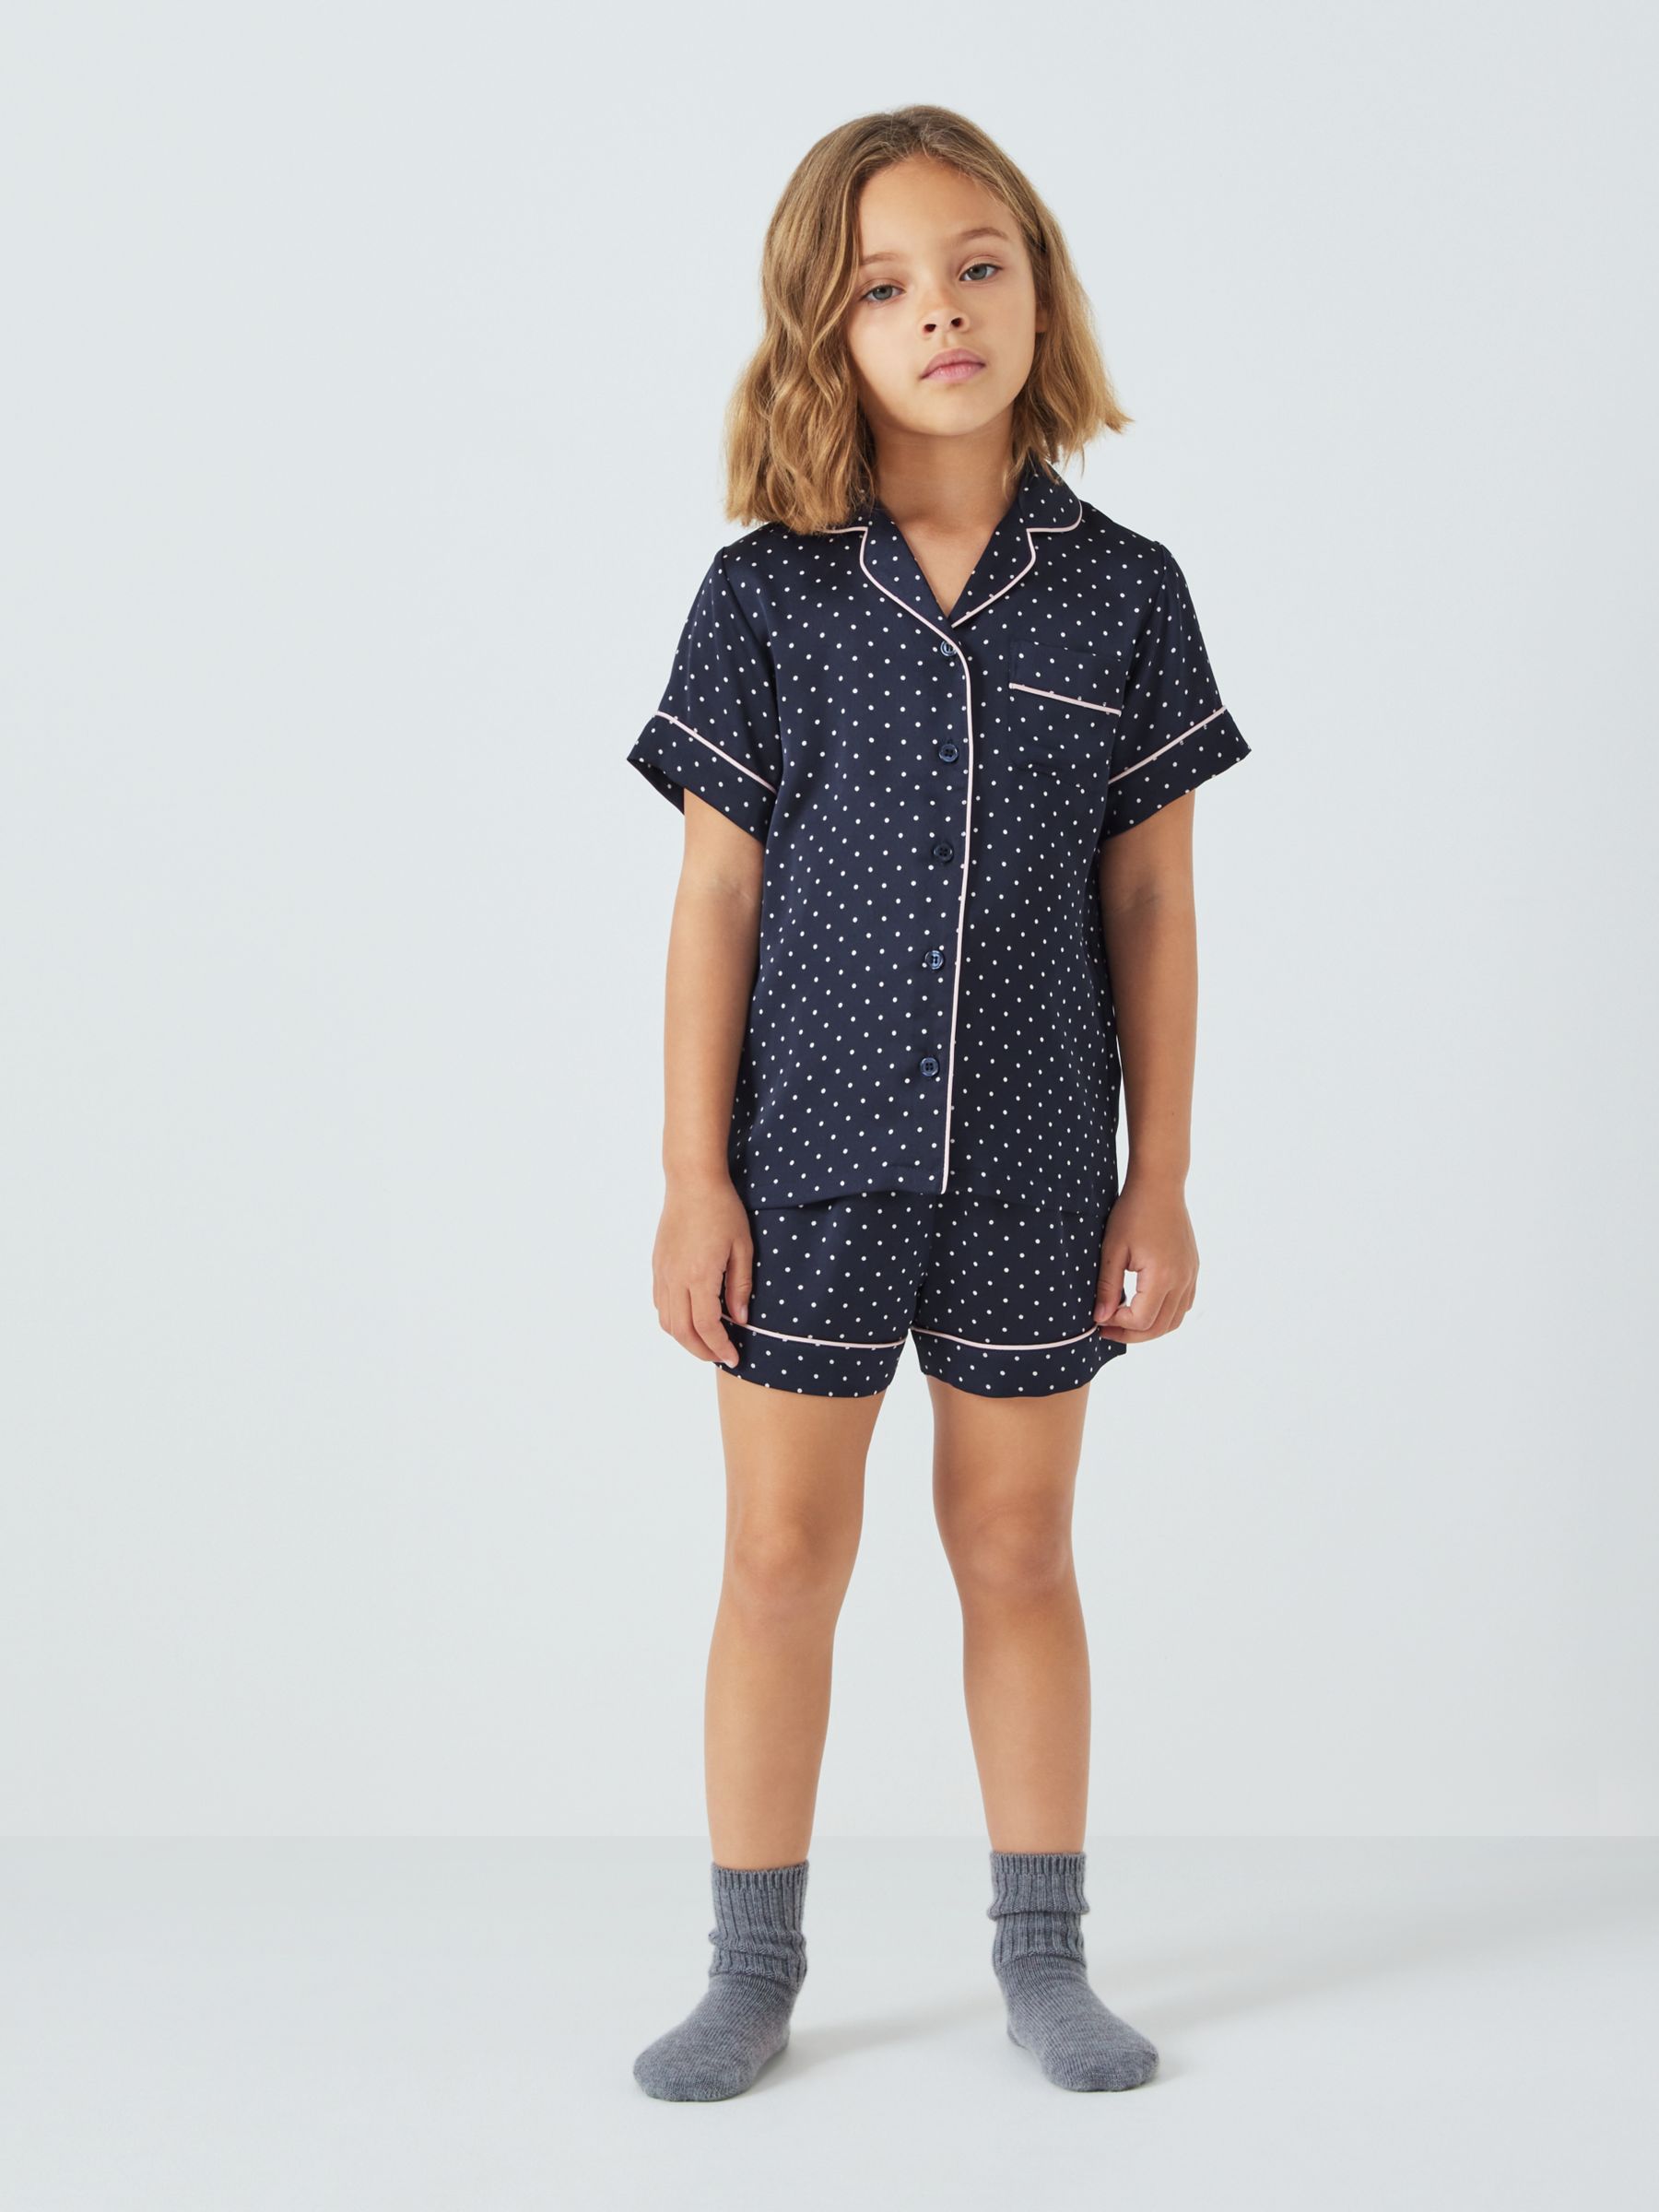 John Lewis Kids' Satin Spot Shortie Pyjamas, Navy, 5 years